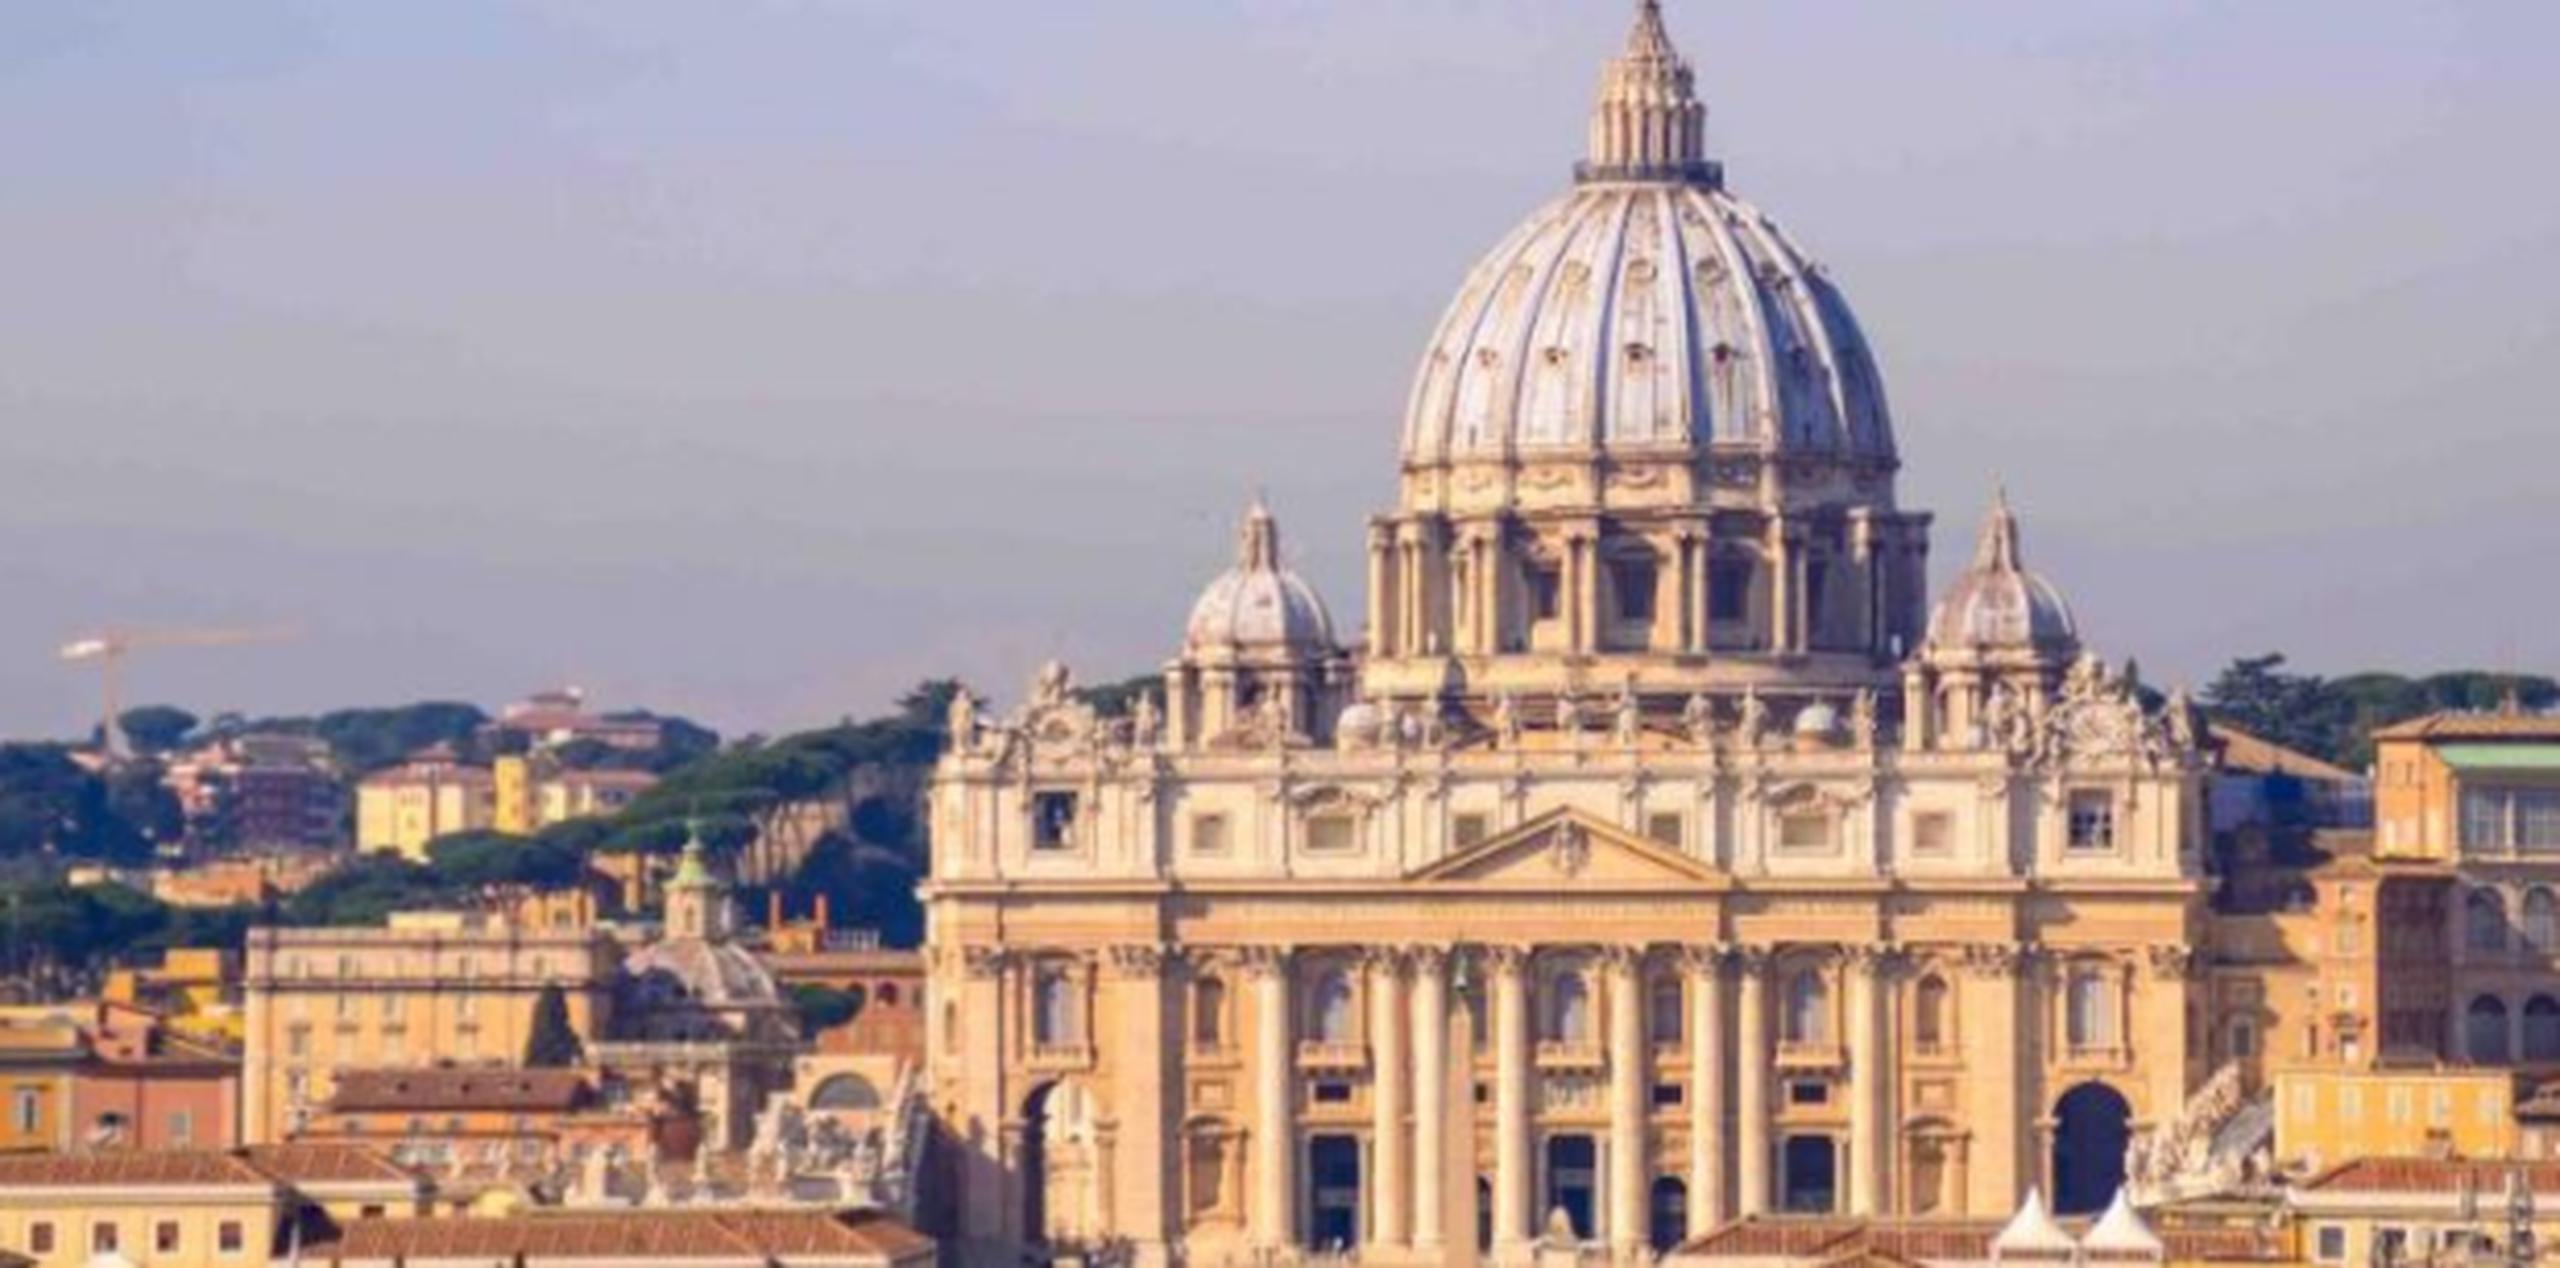 La basílica de San Pablo extramuros es una de las más importantes de Roma, al tener rango de templo papal, y fue reconstruida en el siglo XIX tras el incendio que la destruyó en 1823. (Shutterstock)